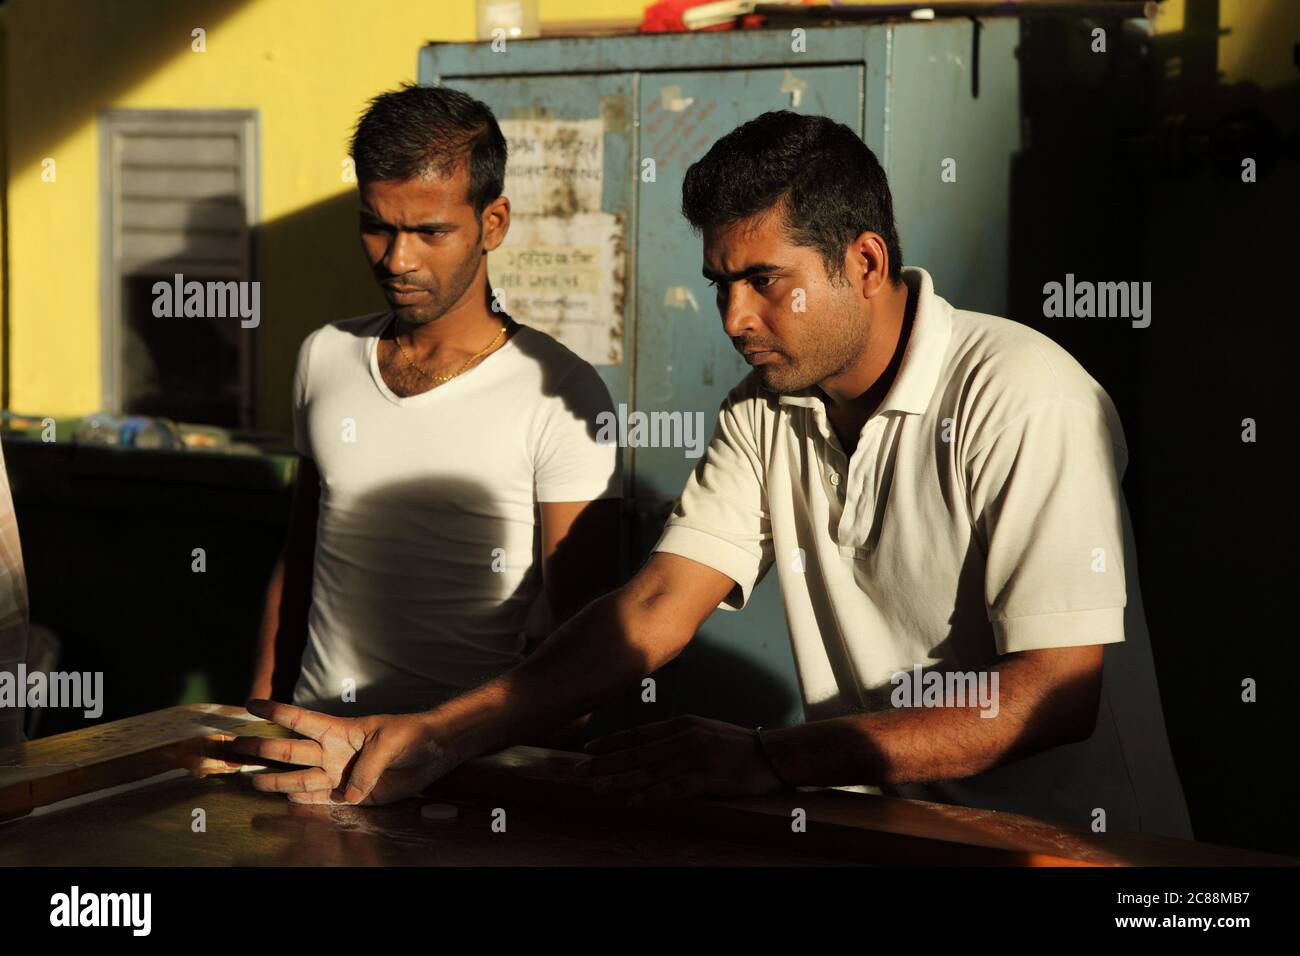 Un hombre adulto indio dedos en la posición de tiro en un juego de carroma Foto de stock